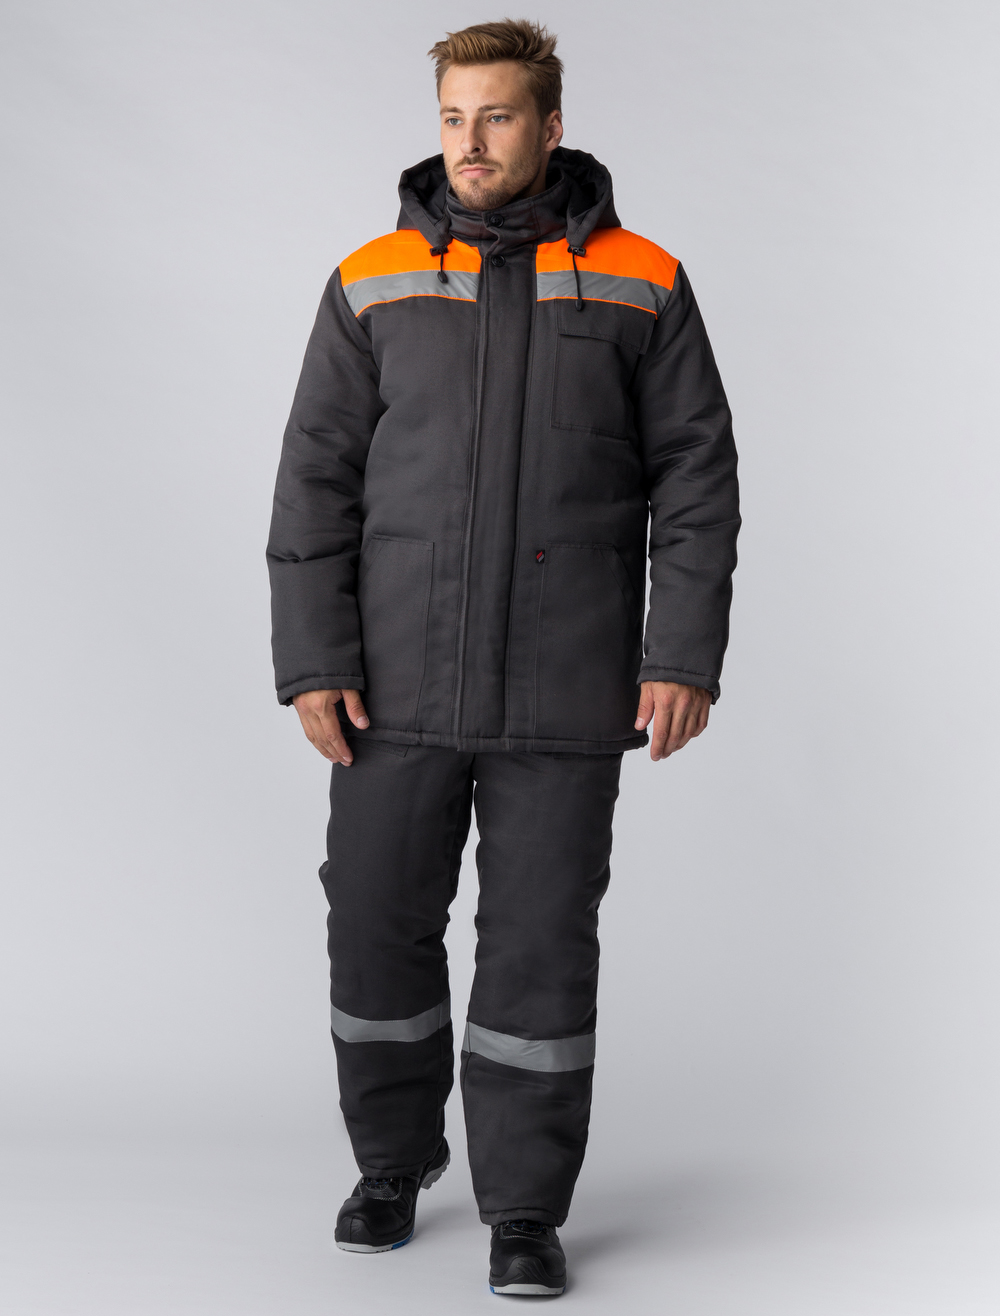 Зимняя куртка "ЭКСПЕРТНЫЙ-ЛЮКС" мужская, утепленная, цвет: серый с оранжевым, ткань: смесовая